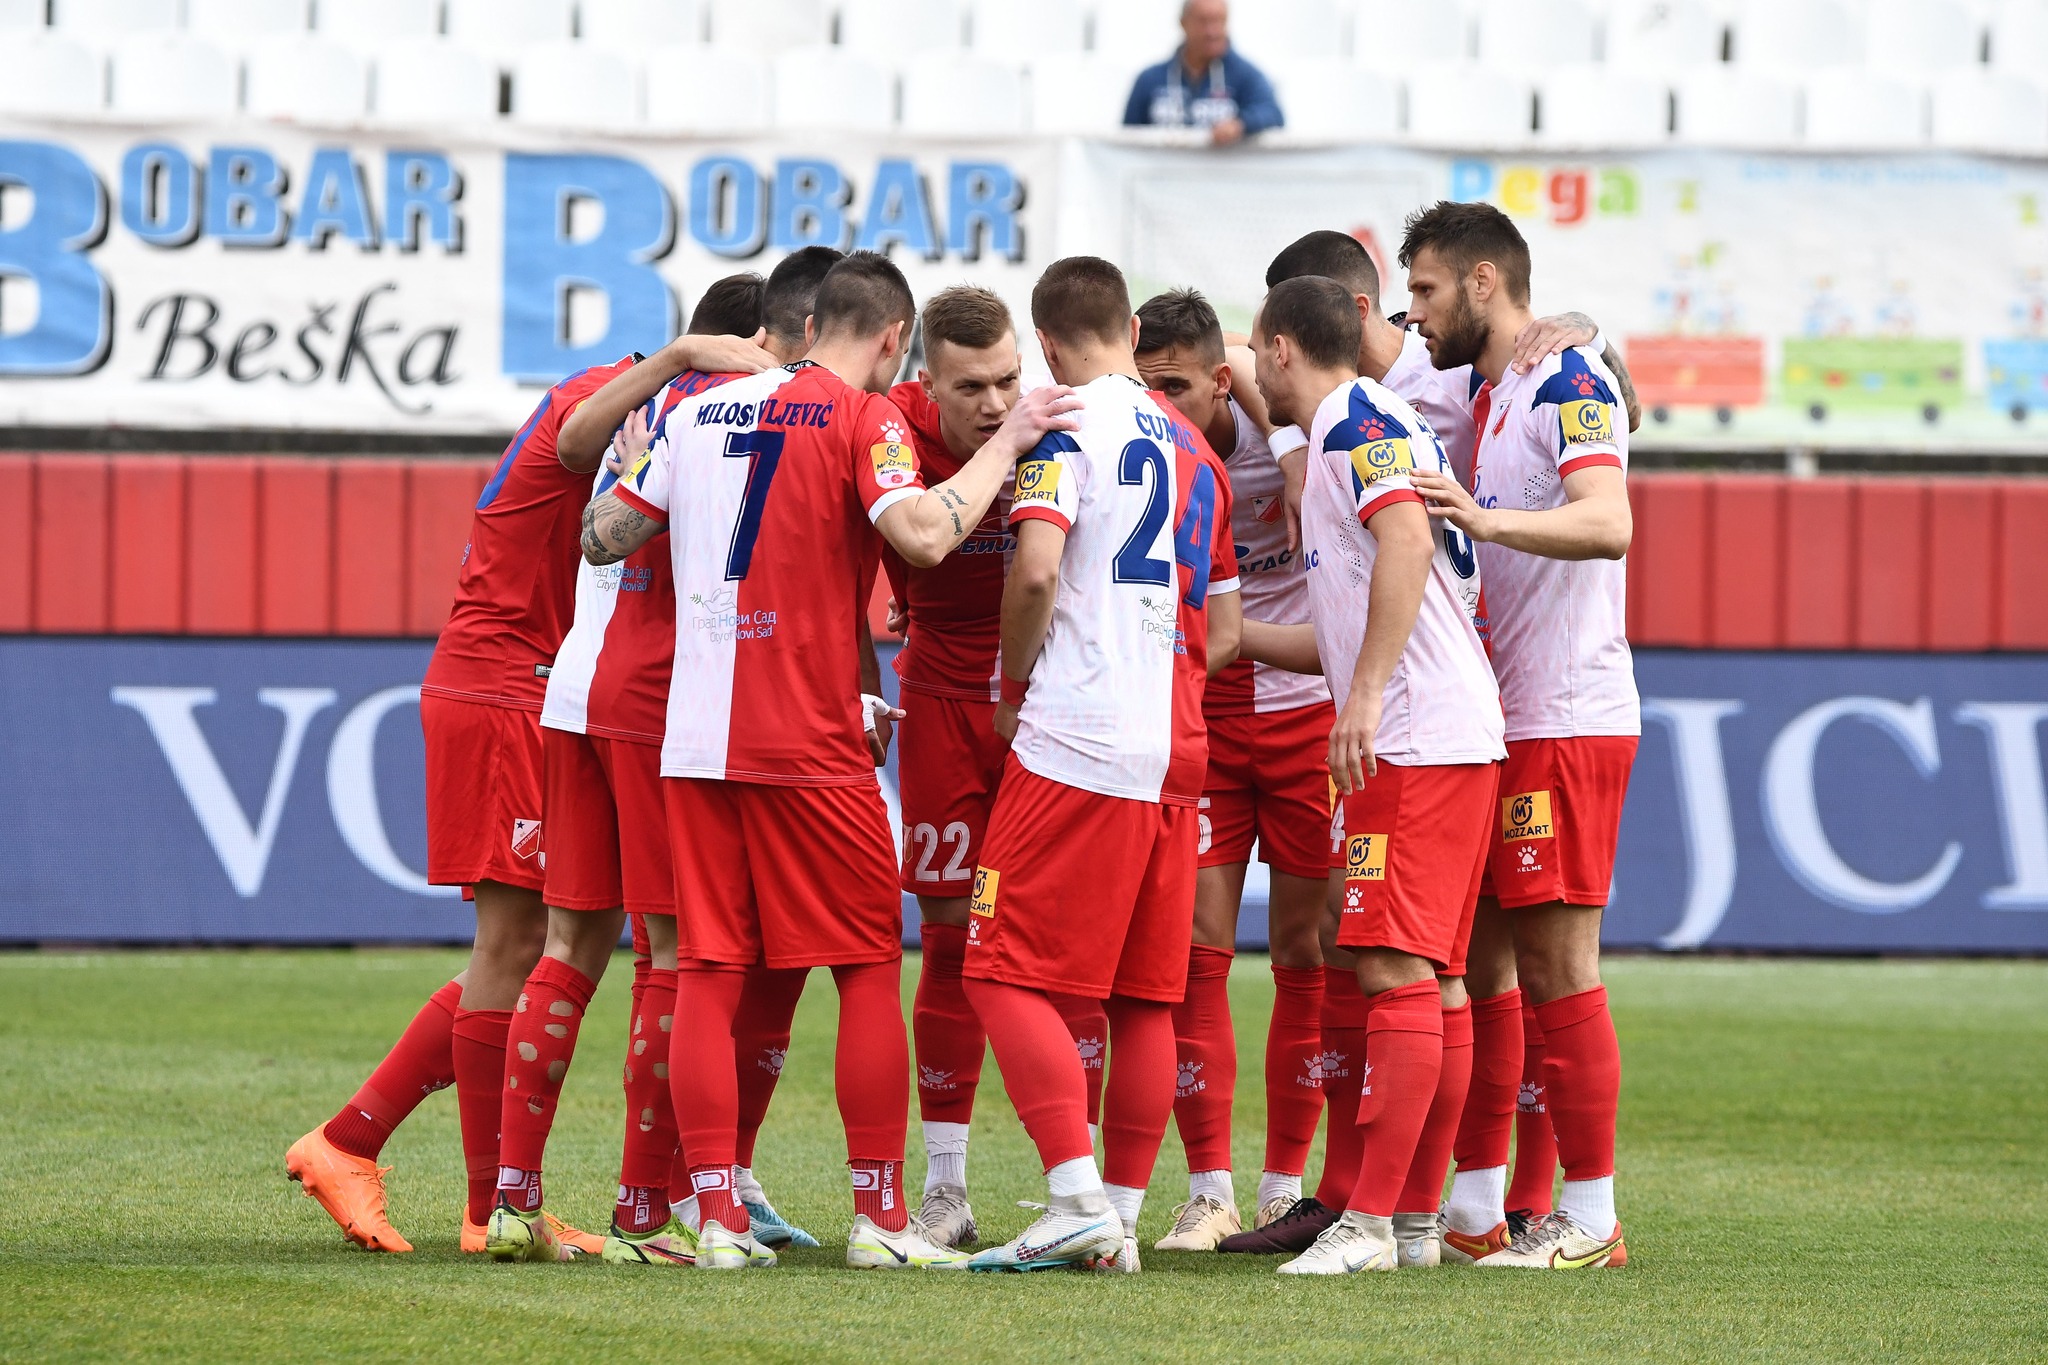 Voša convincing against Radnički! – FK Vojvodina